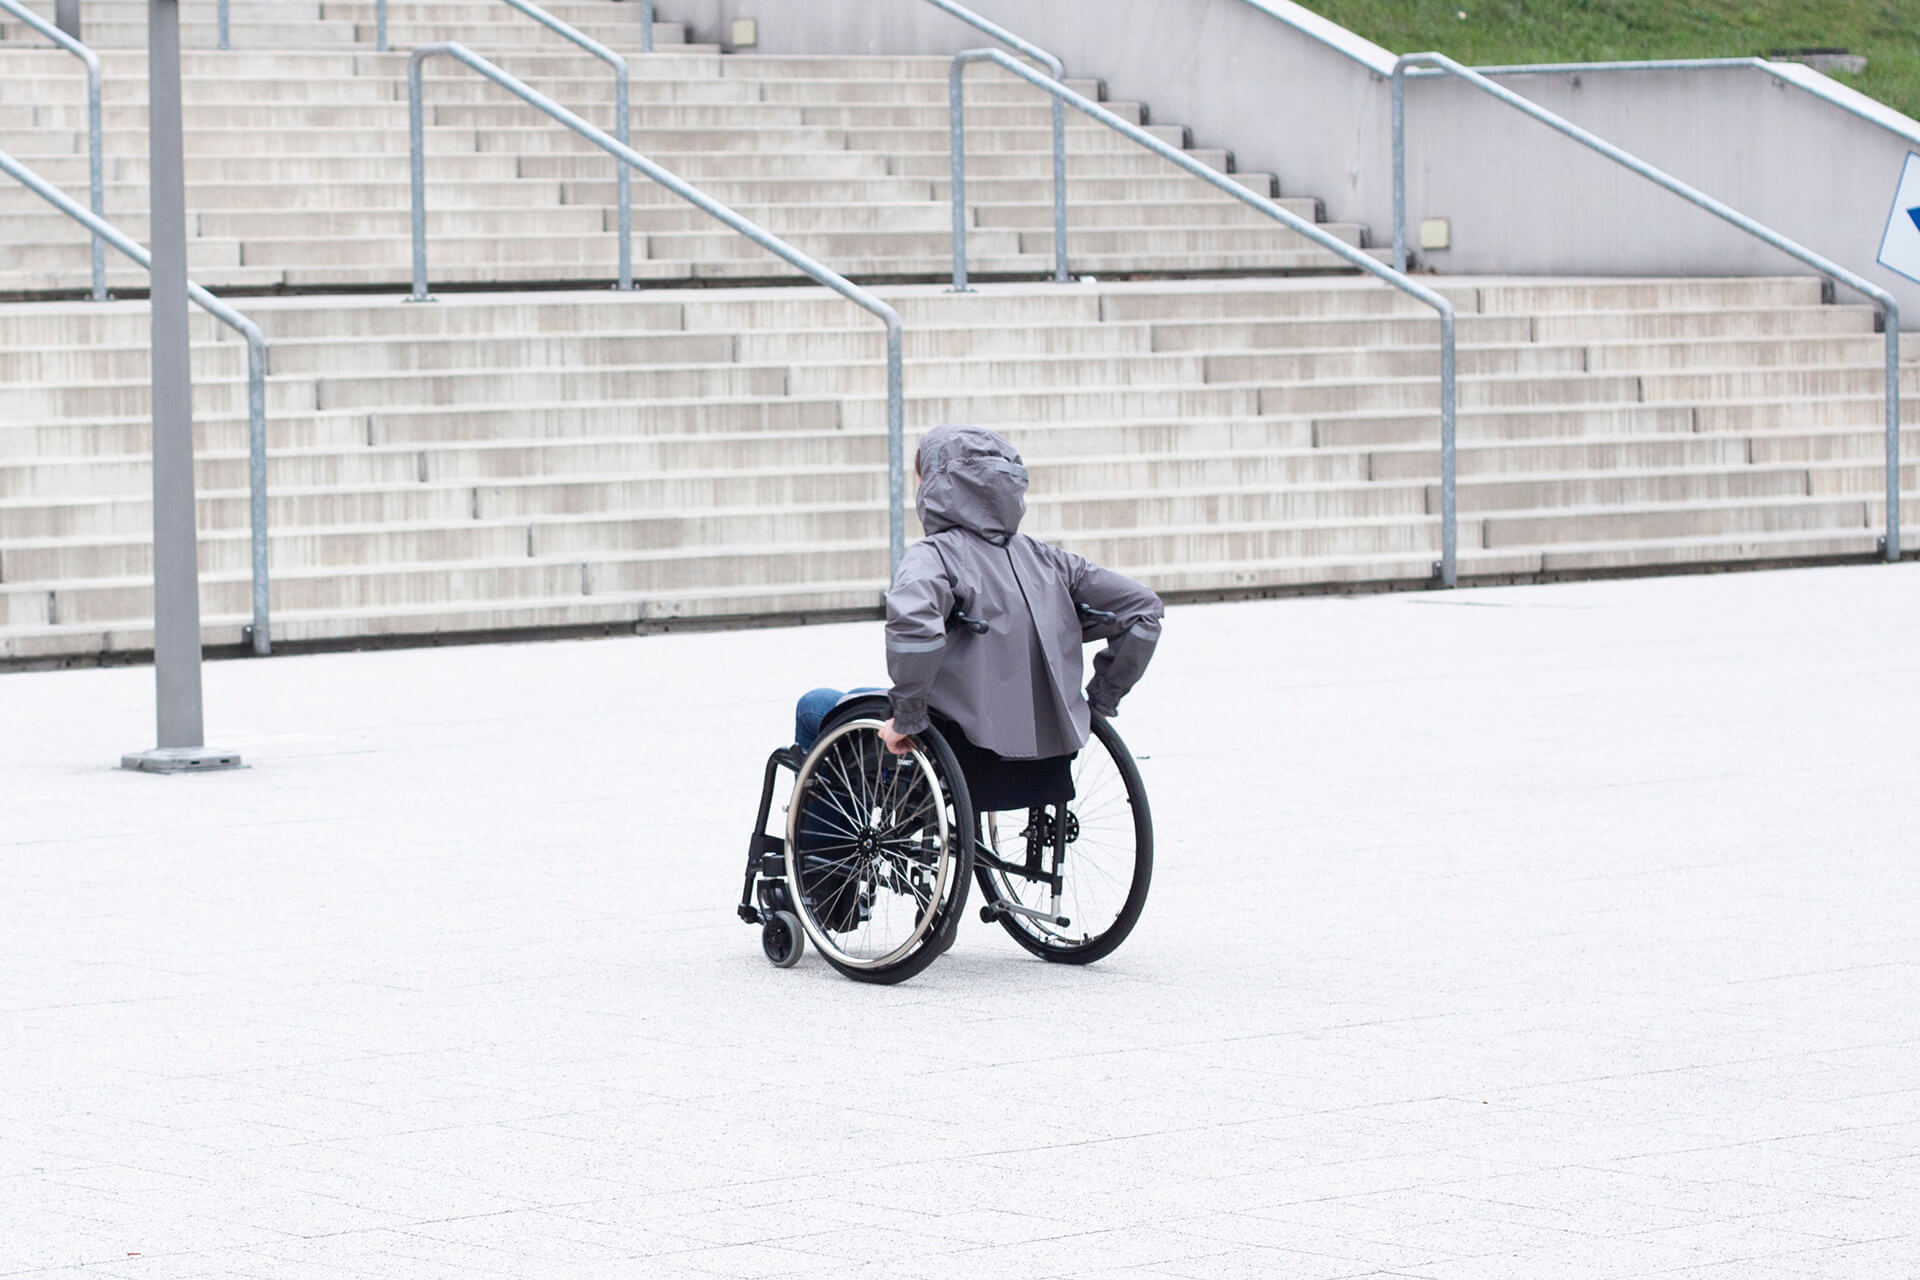 osoba na wózku inwalidzkim ubrana w płaszcz przeciwdeszczowy, który jest zaprojektowany tak, że nie krępuje jej ruchów, w tle nowoczesna architektura, betonowe schody